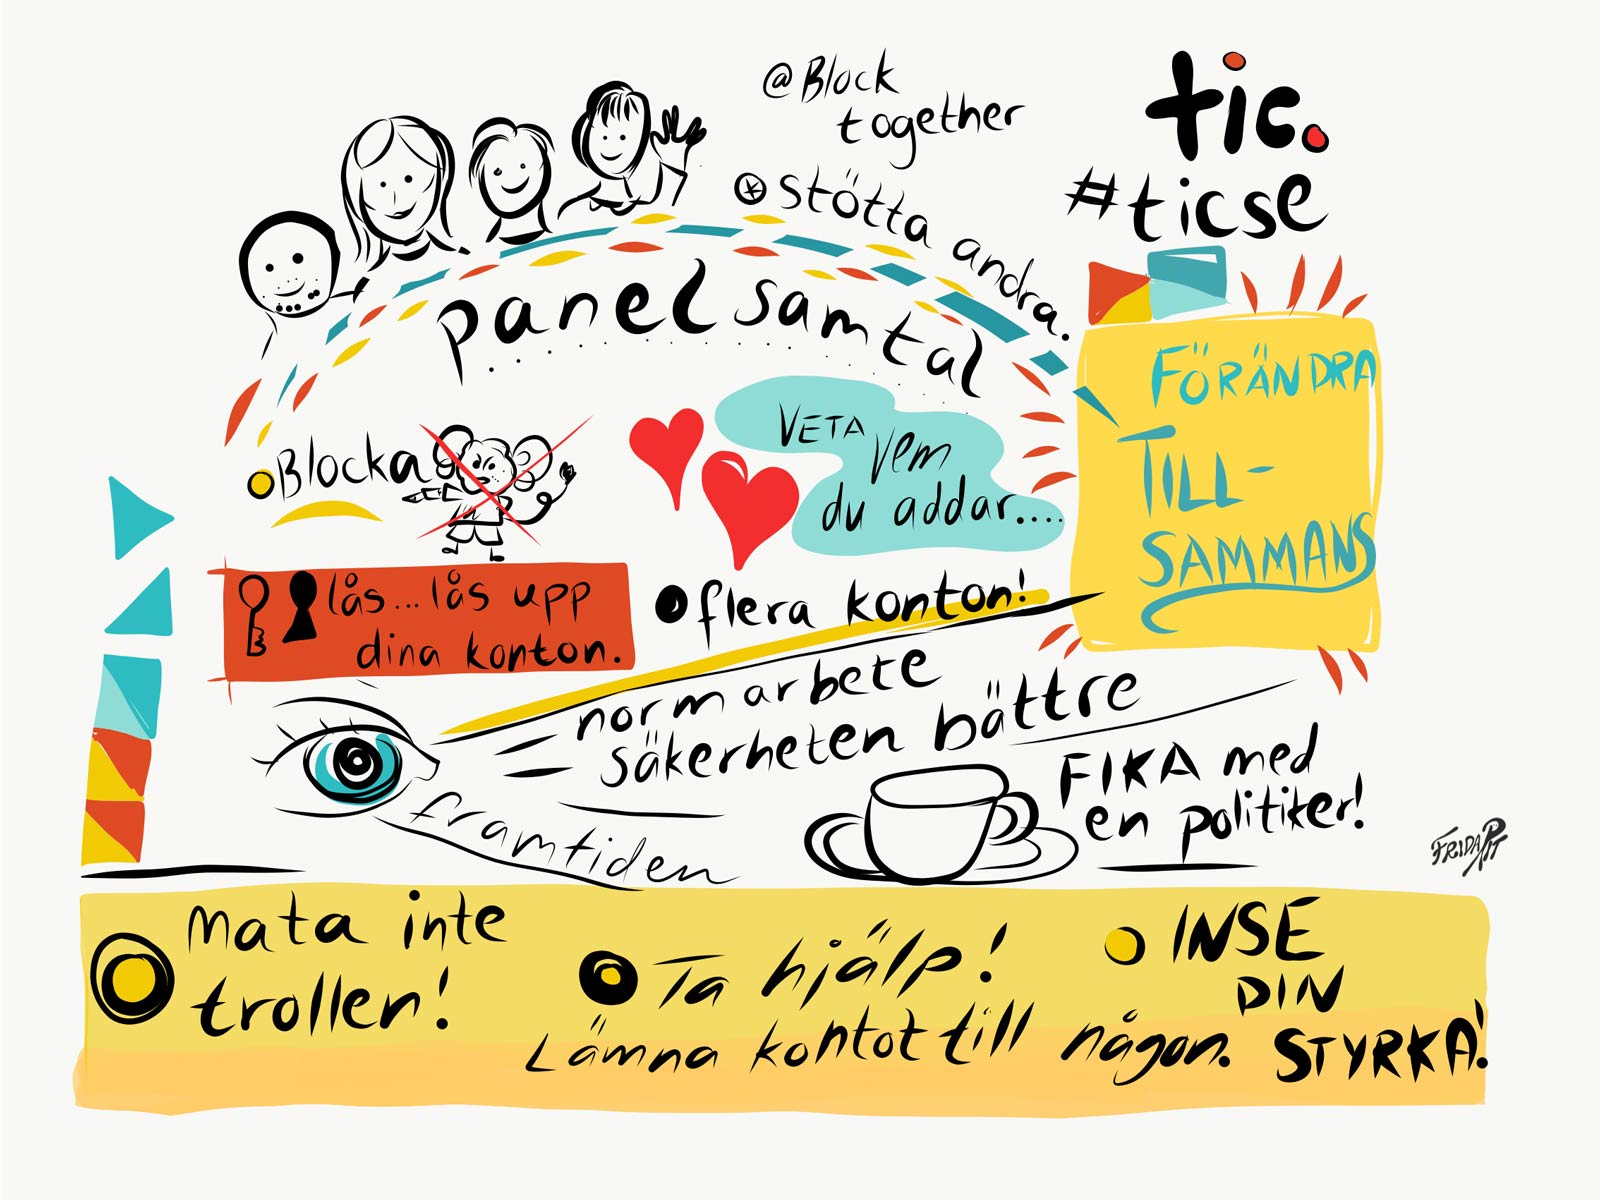 Graphic recording av paneldebatten om bloggdrev, näthat och politik. Av Frida Panoussis, fridarit.se.